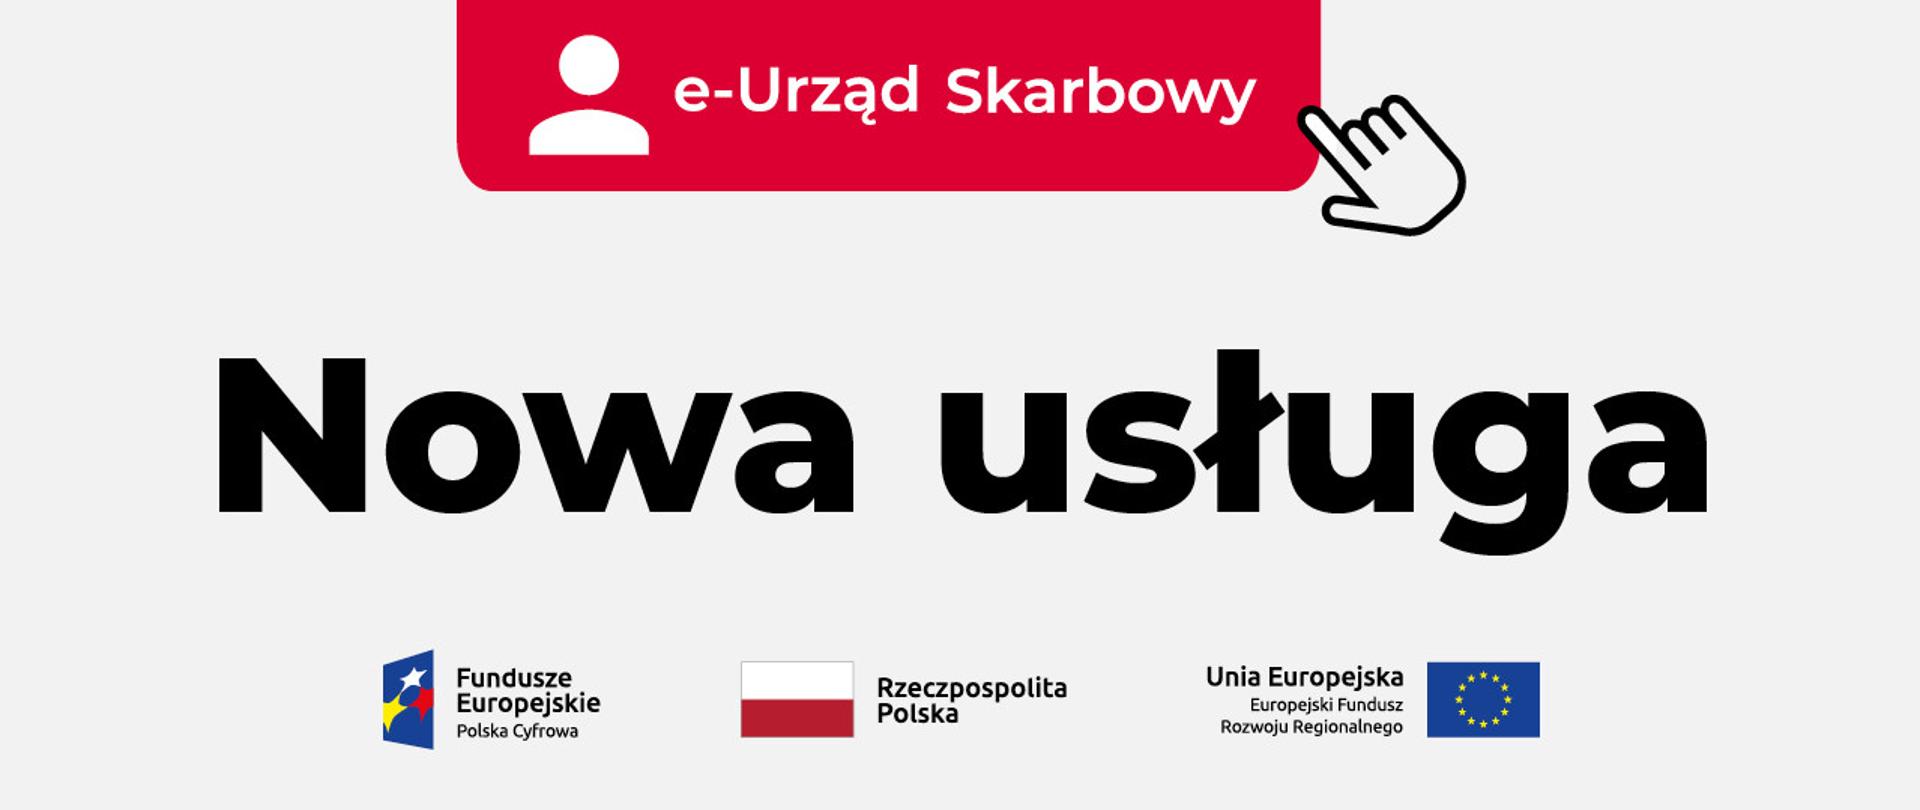 Guzik z napisem e-Urząd Skarbowy, napis Nowa usługa, oznaczenia funduszy UE.